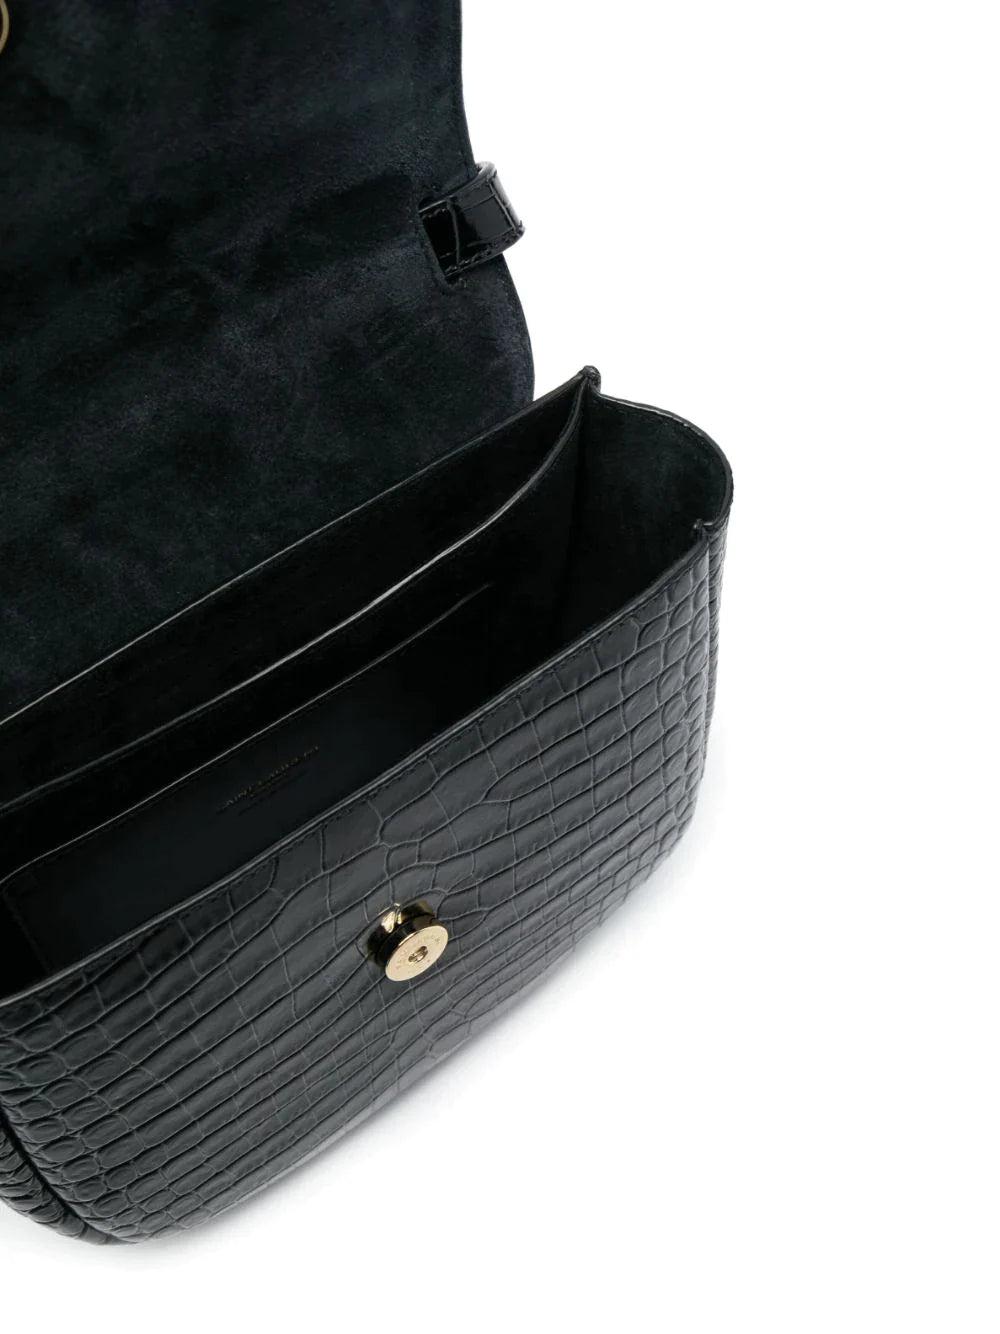 YSL Kaia Leather Crossbody Bag - ForPrestige